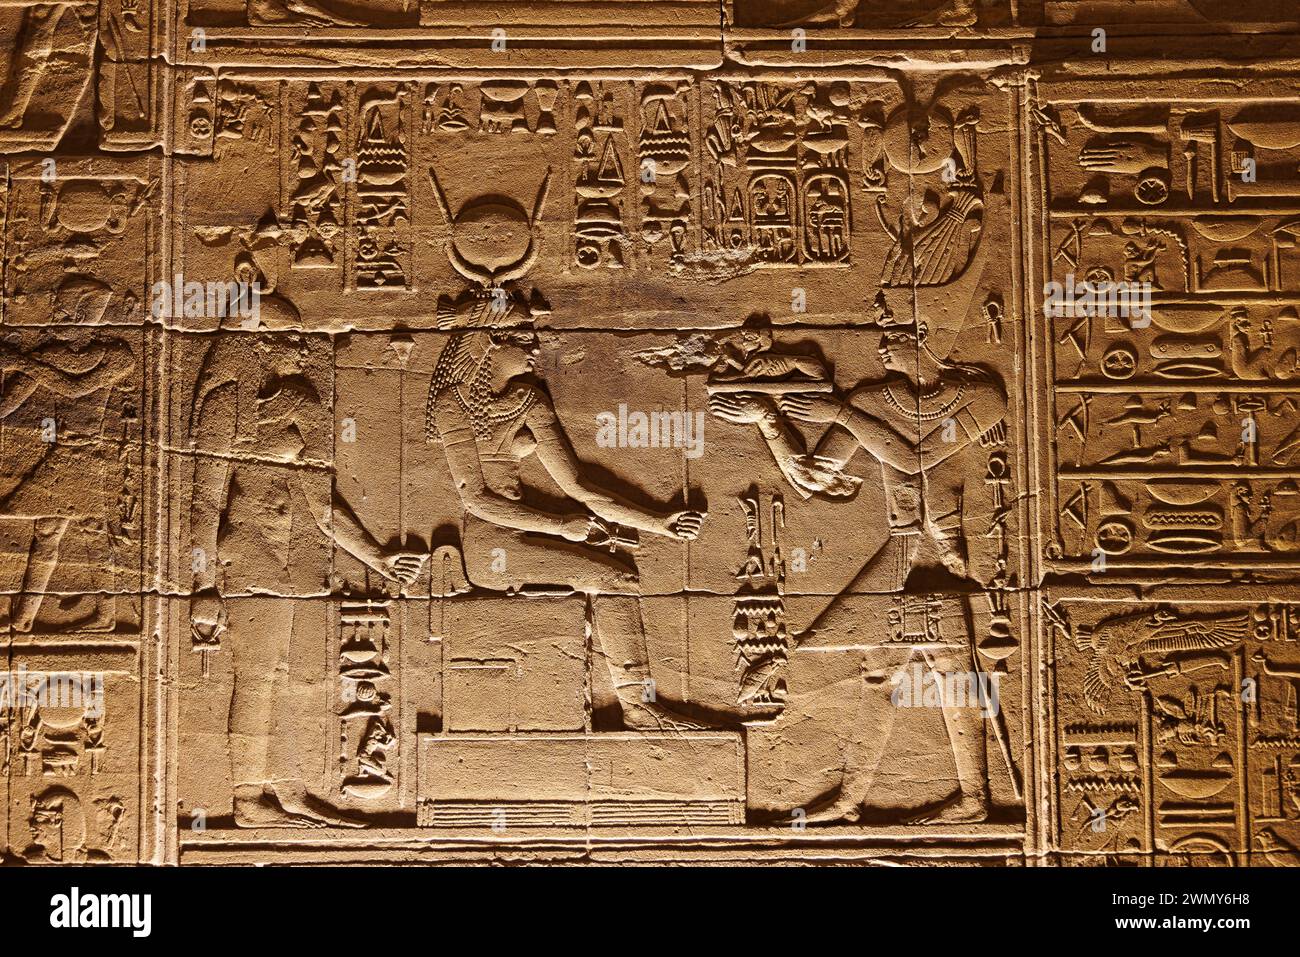 Egitto, Assuan, monumenti nubiani da Abu Simbel a file, patrimonio dell'umanità dell'UNESCO, tempio di Iside a file, bassorilievo Foto Stock